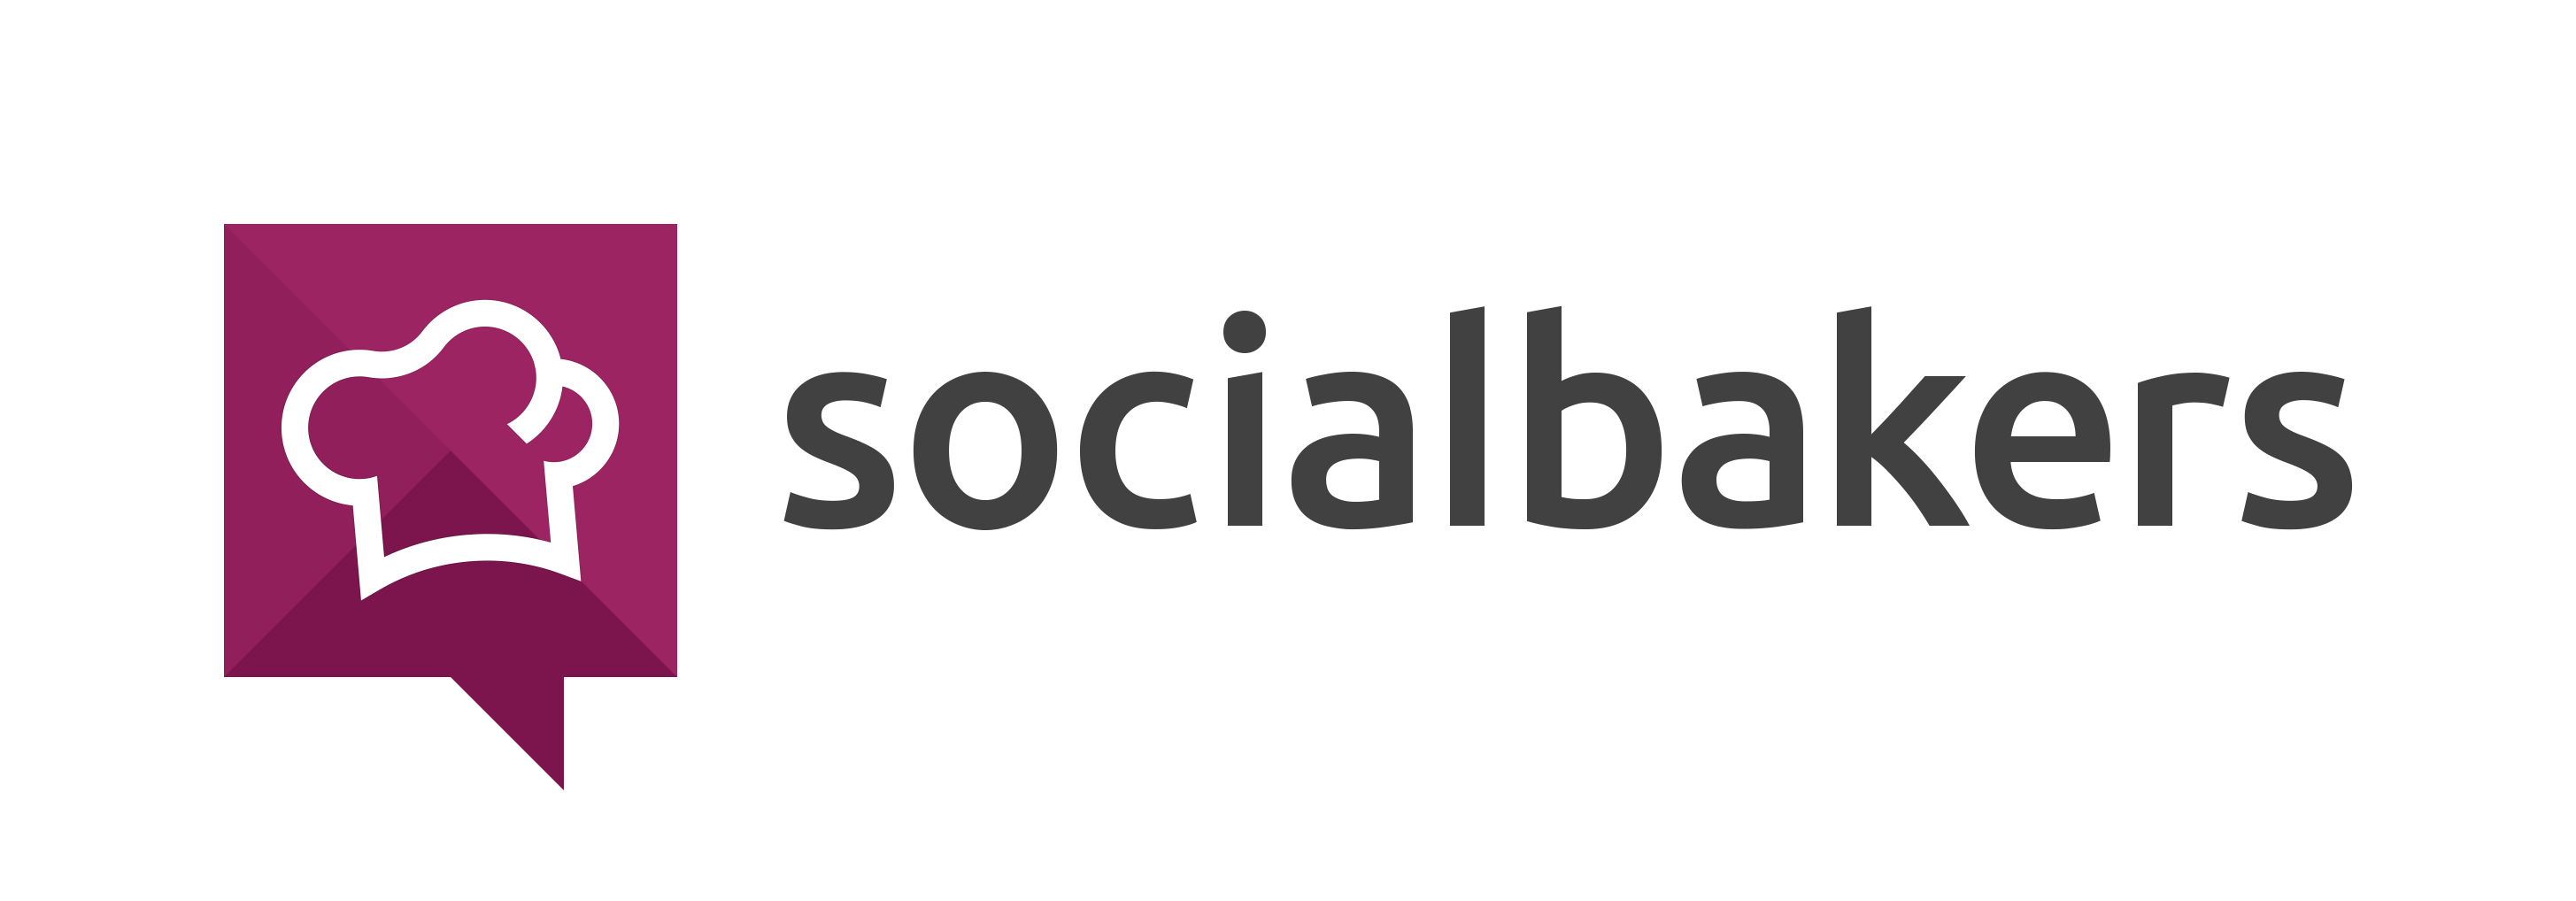 socialbakers-logo